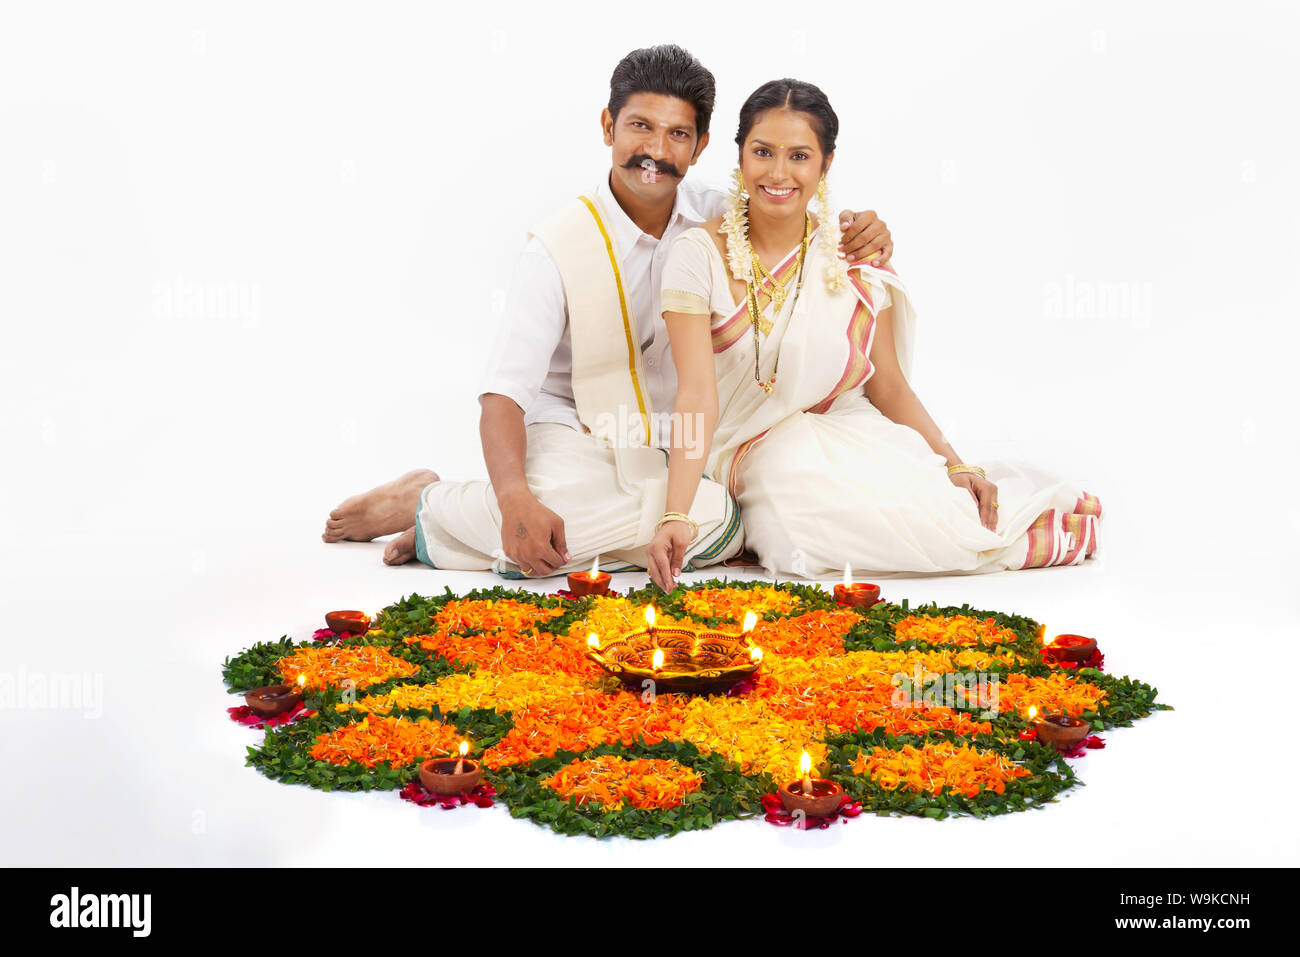 South Indian couple celebrating Diwali Stock Photo